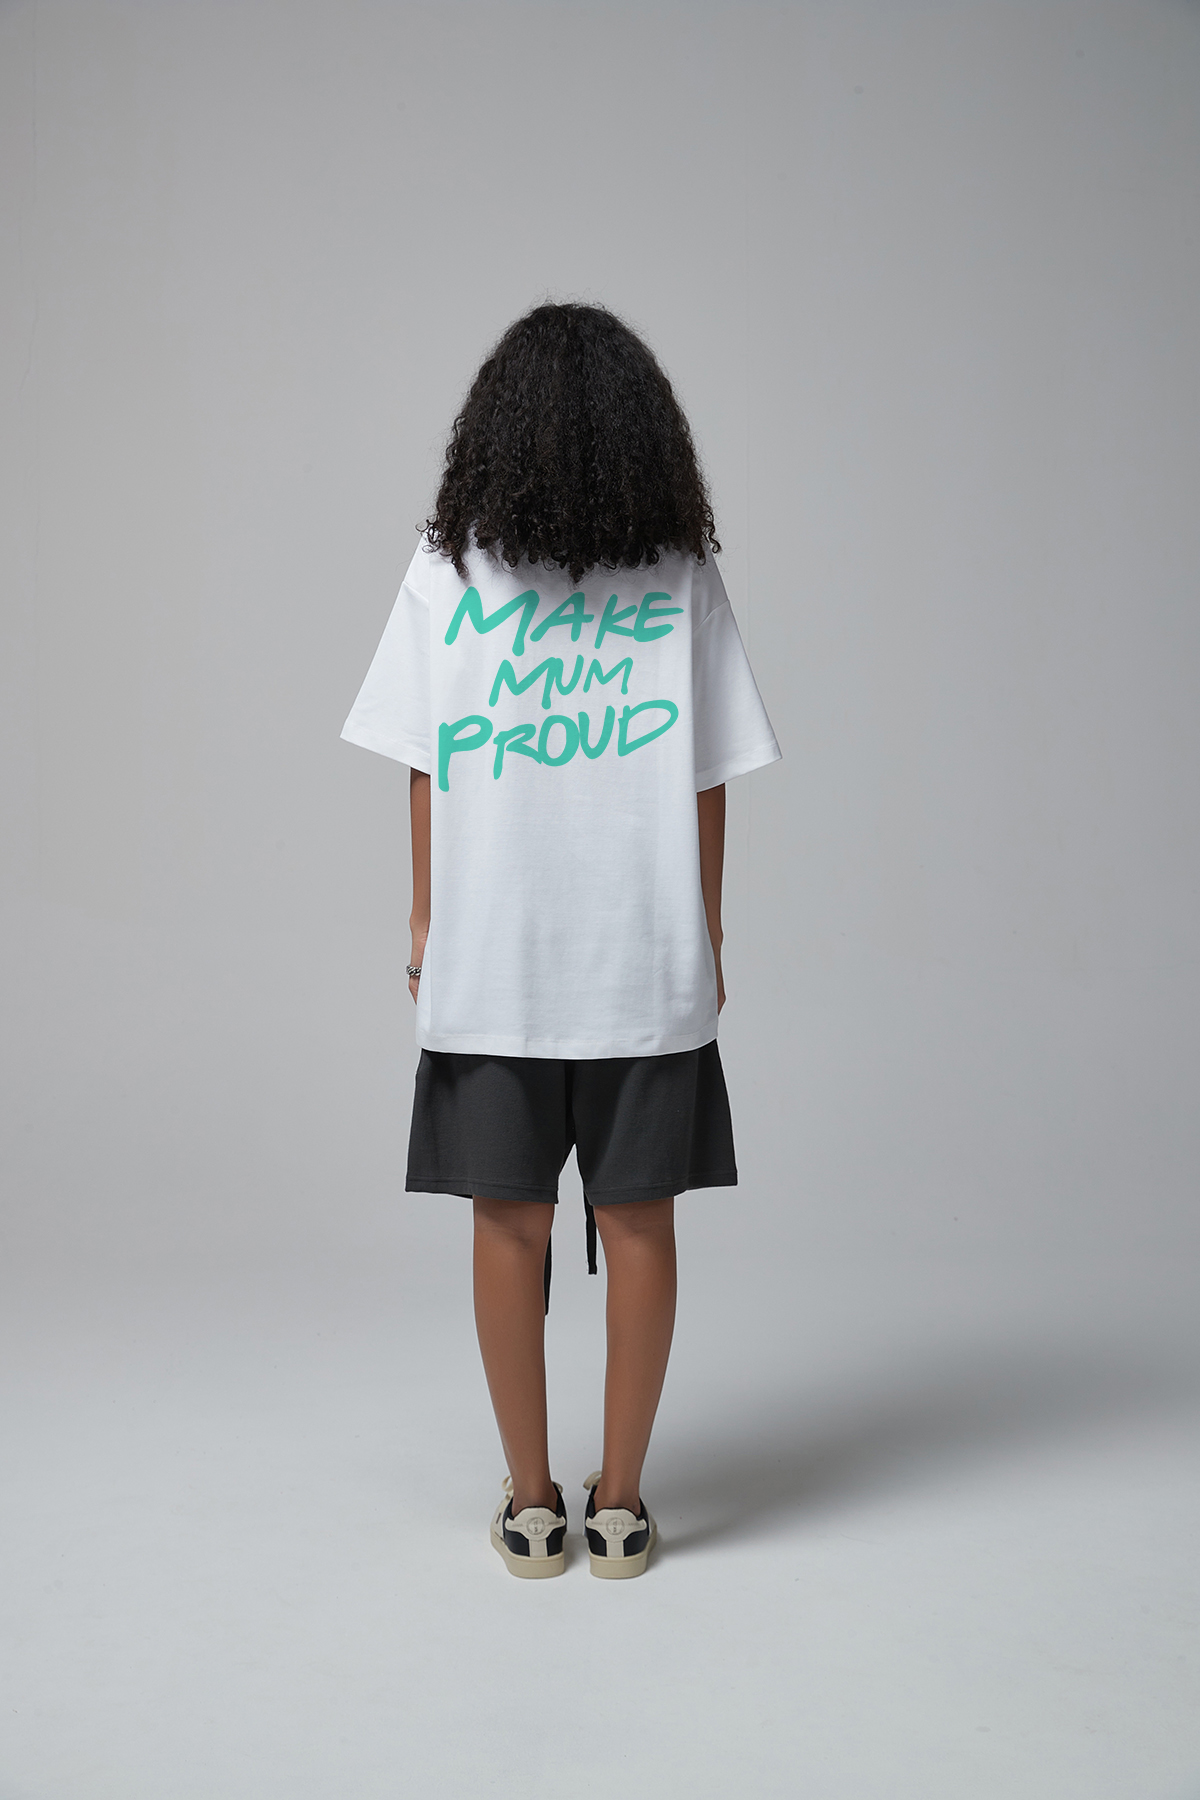 Make Mum Proud T-Shirt White